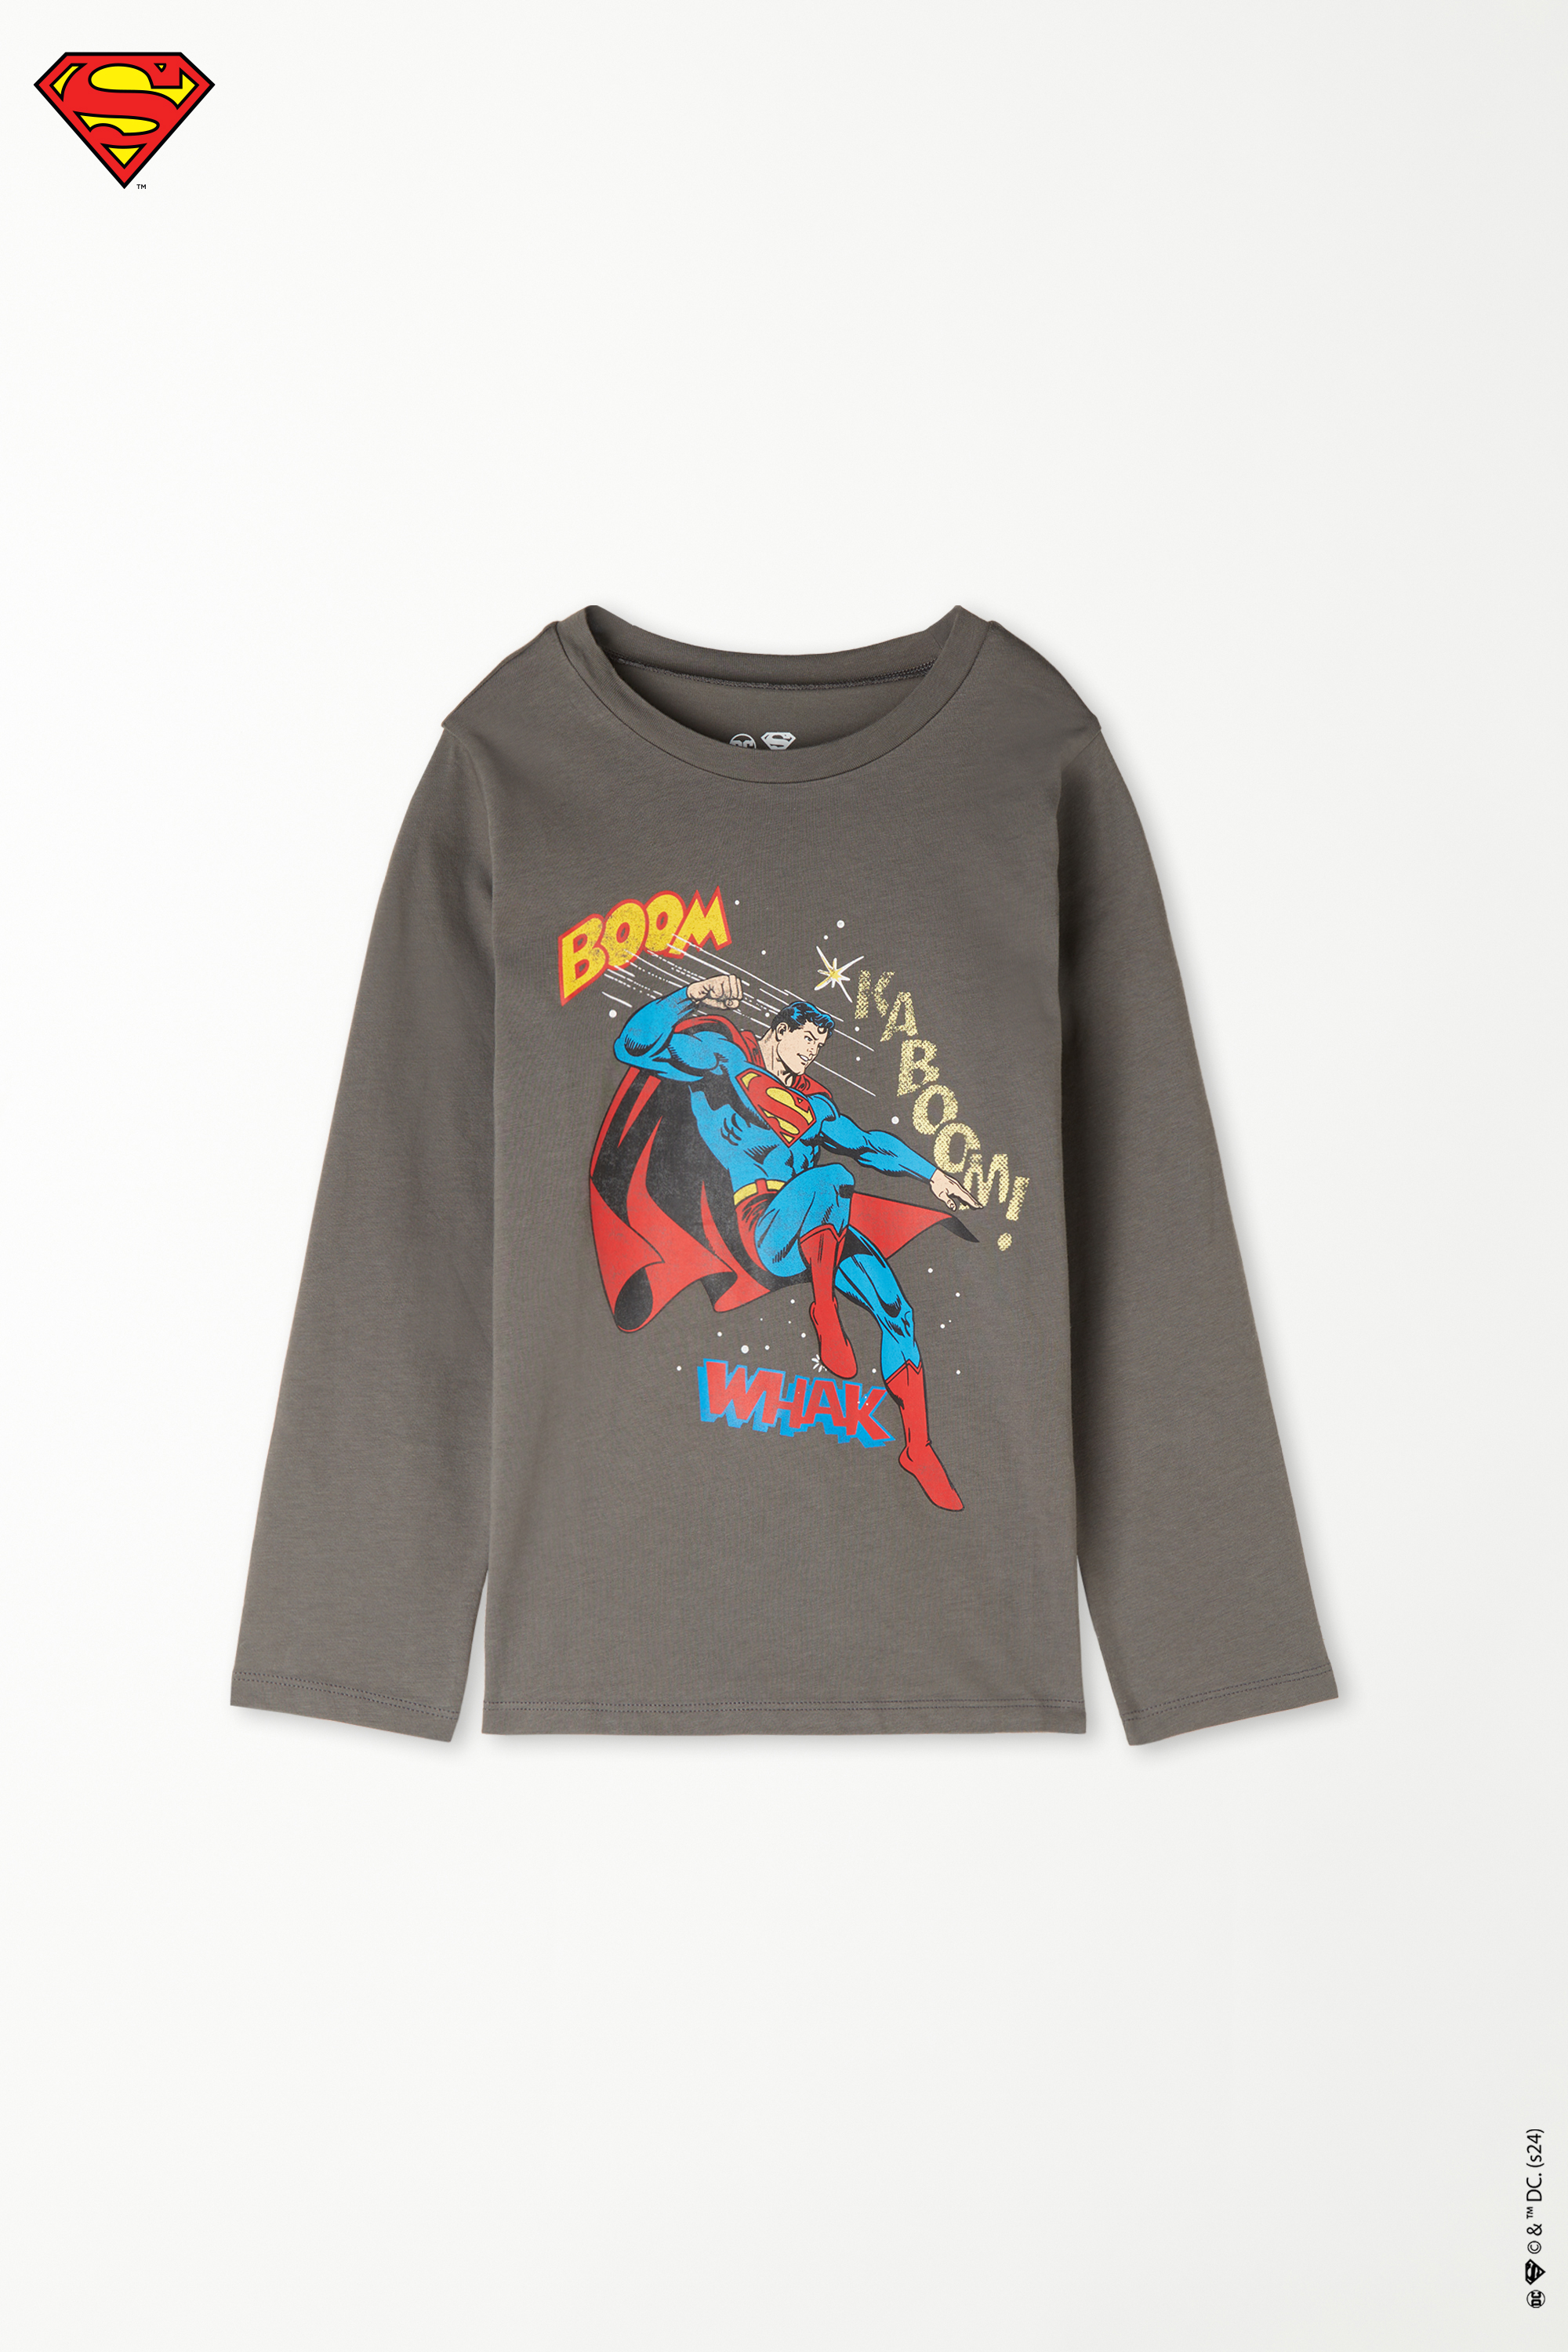 Bluzka Chłopięca z Długim Rękawem, Okrągłym Dekoltem i Nadrukiem Superman